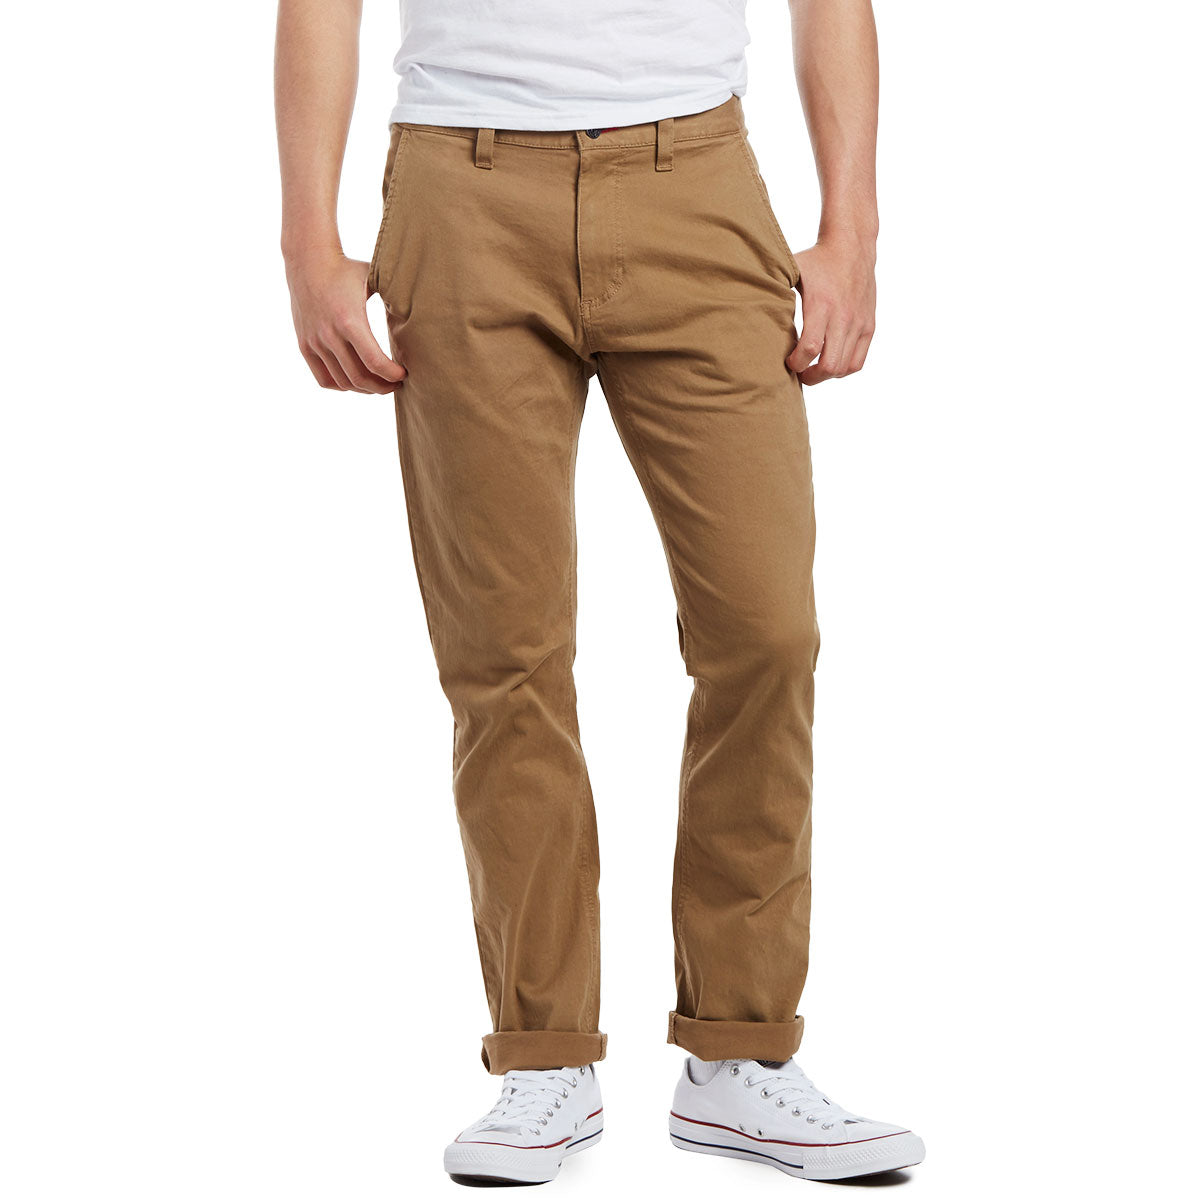 CCS Straight Fit Chino Pants - Khaki